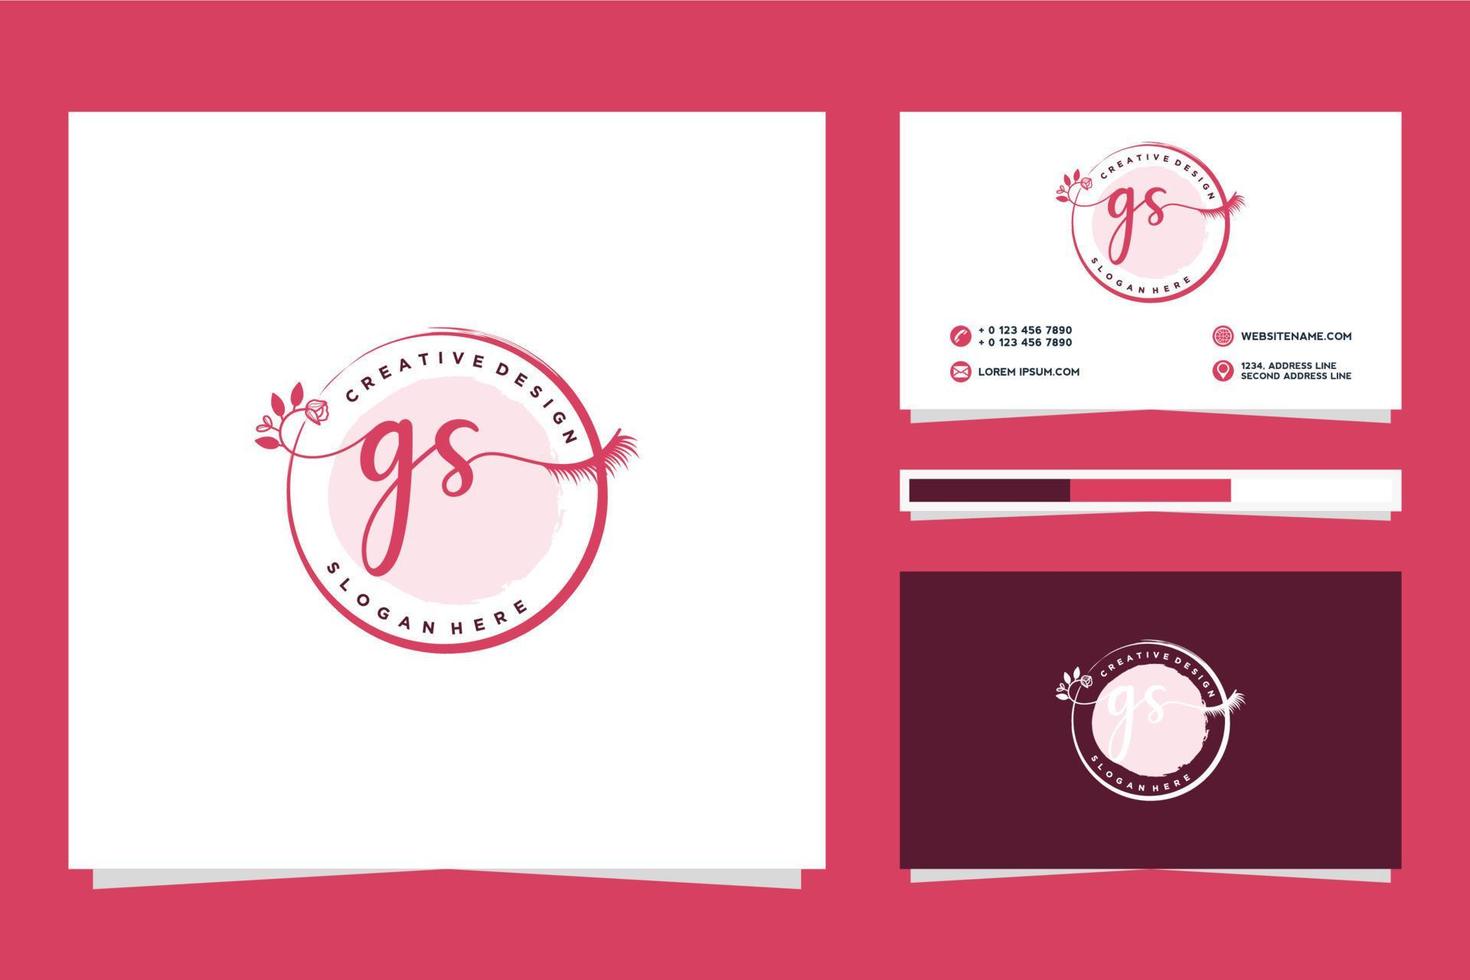 Initiale gs feminin Logo Sammlungen und Geschäft Karte Templat Prämie Vektor